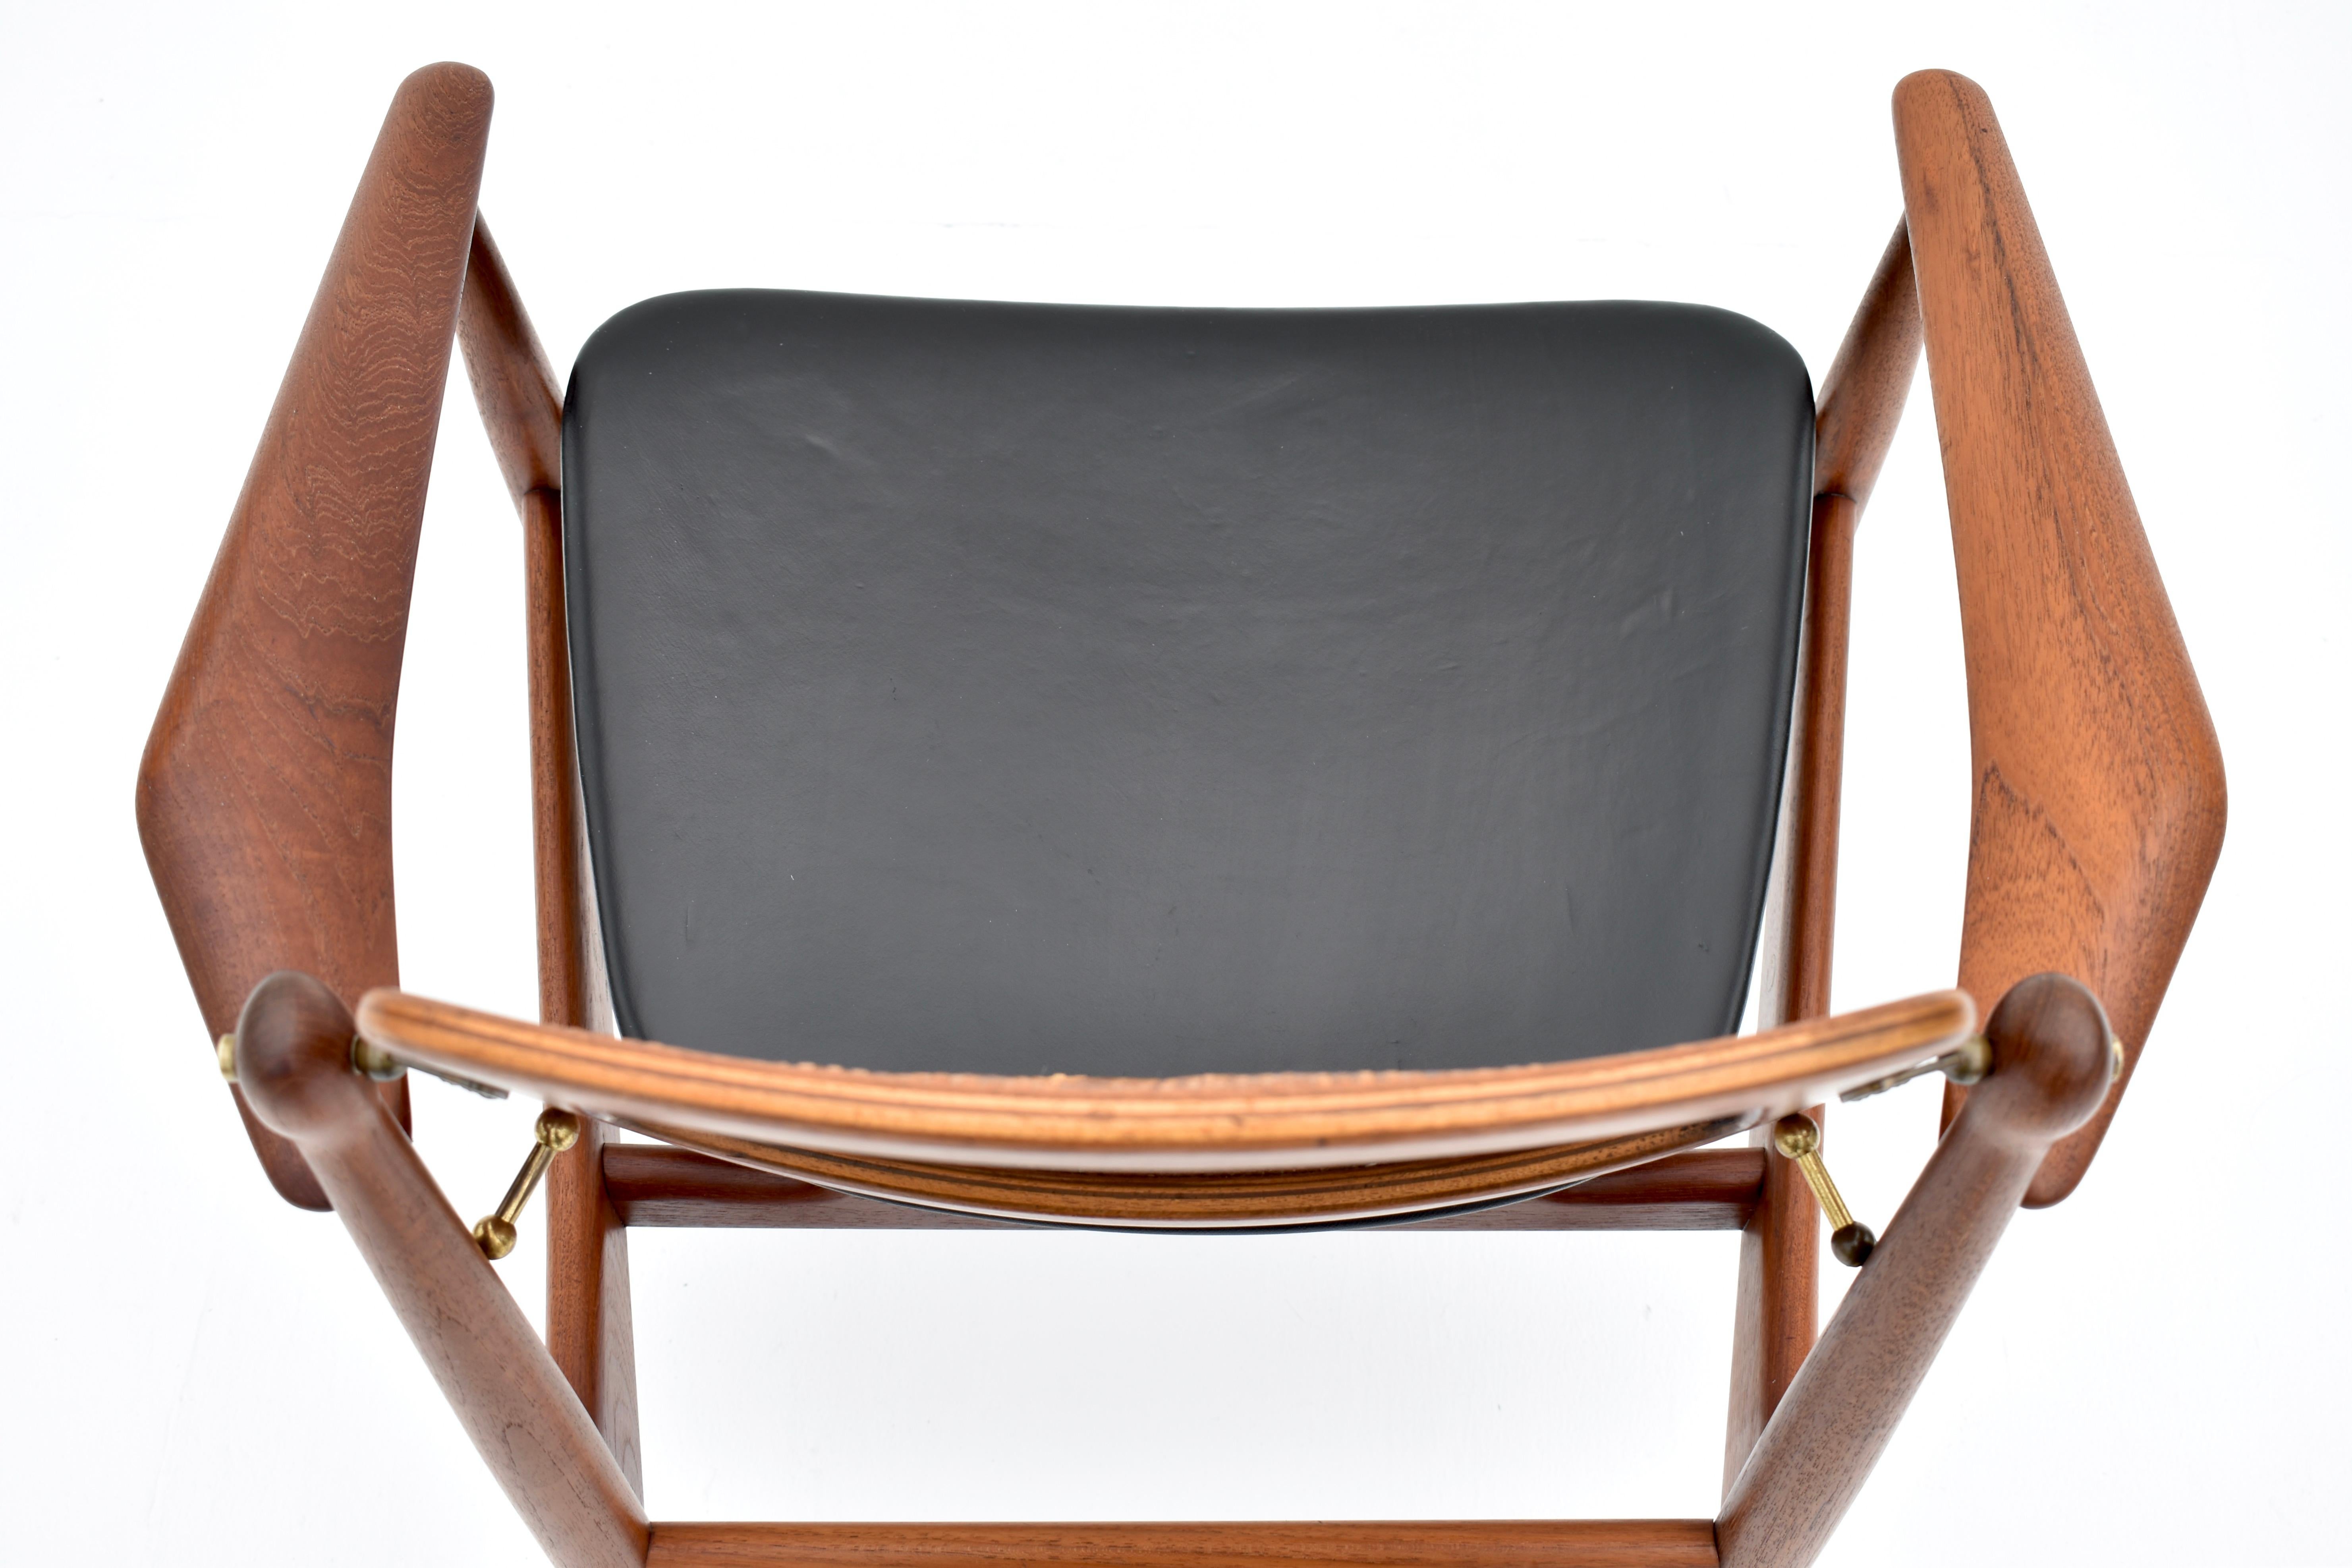 Mid-20th Century Arne Vodder Model 186 Teak, Rattan & Leather Chair For France & Son, Denmark For Sale